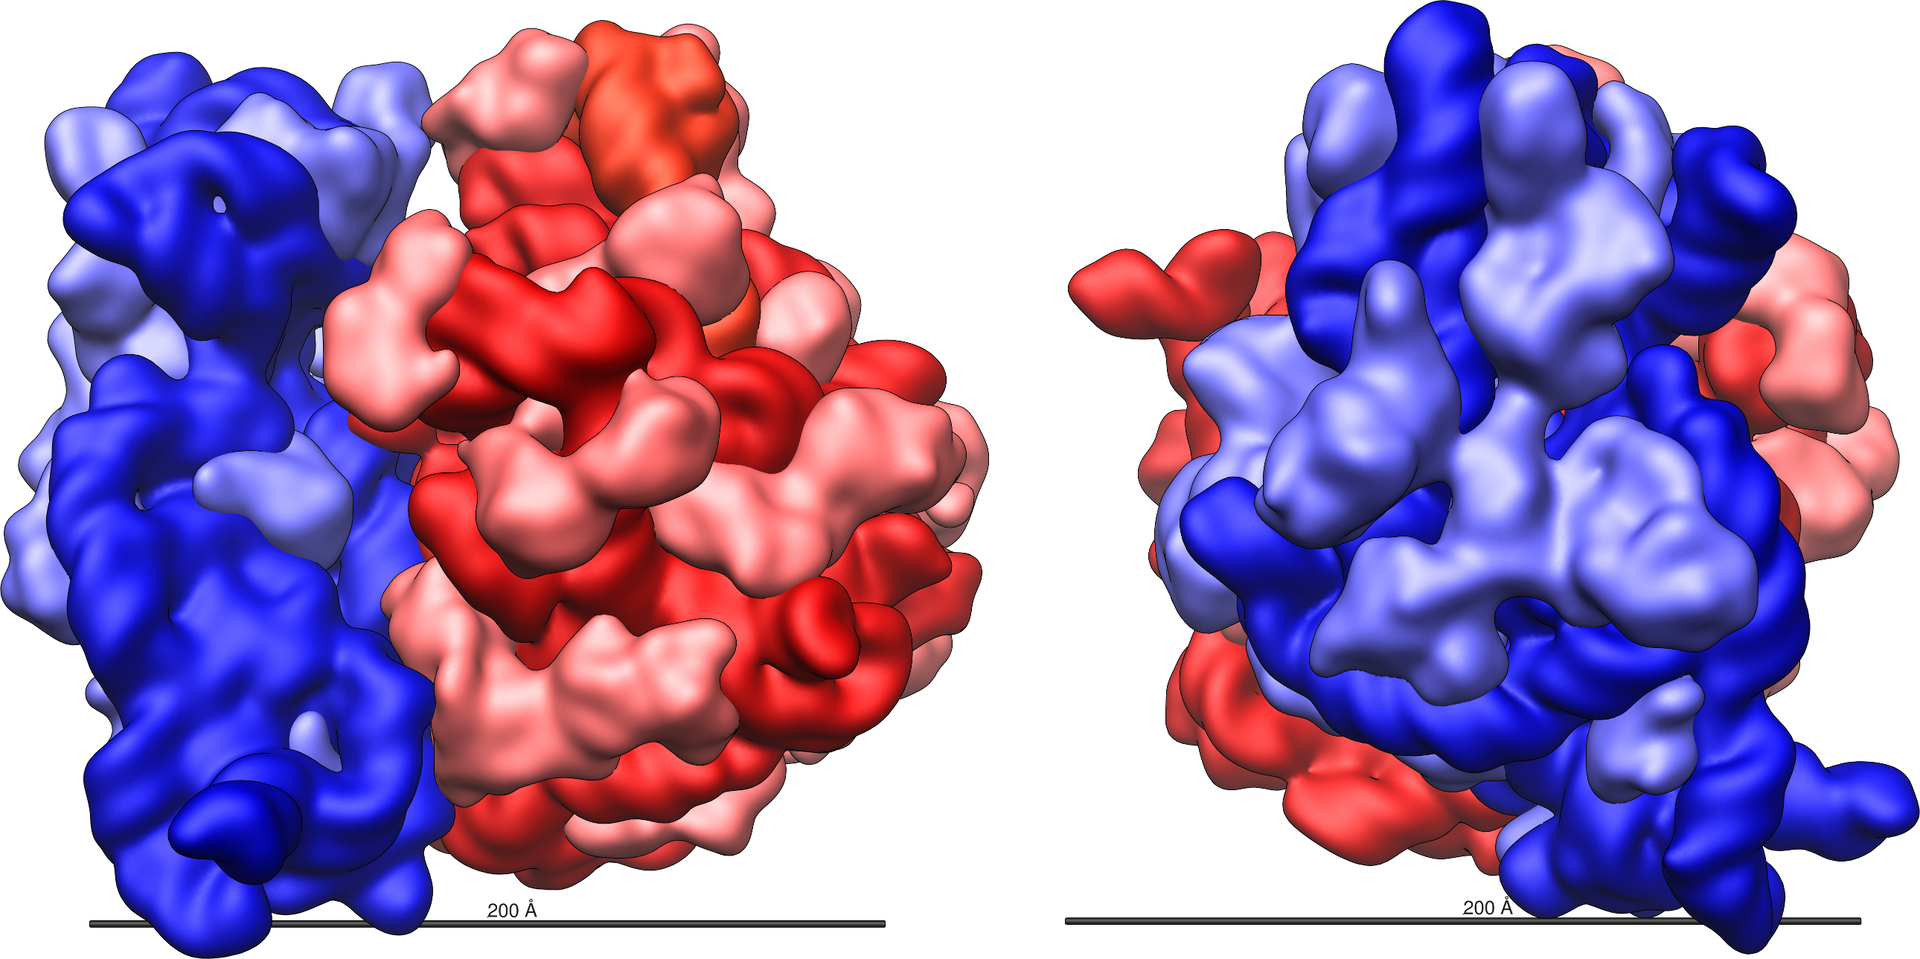 Grafika przedstawia model rybosomu. Jest on stworzony z dwóch poplątanych ze sobą, niekształtnych cząstek - w kolorze niebieskim i czerwonym.